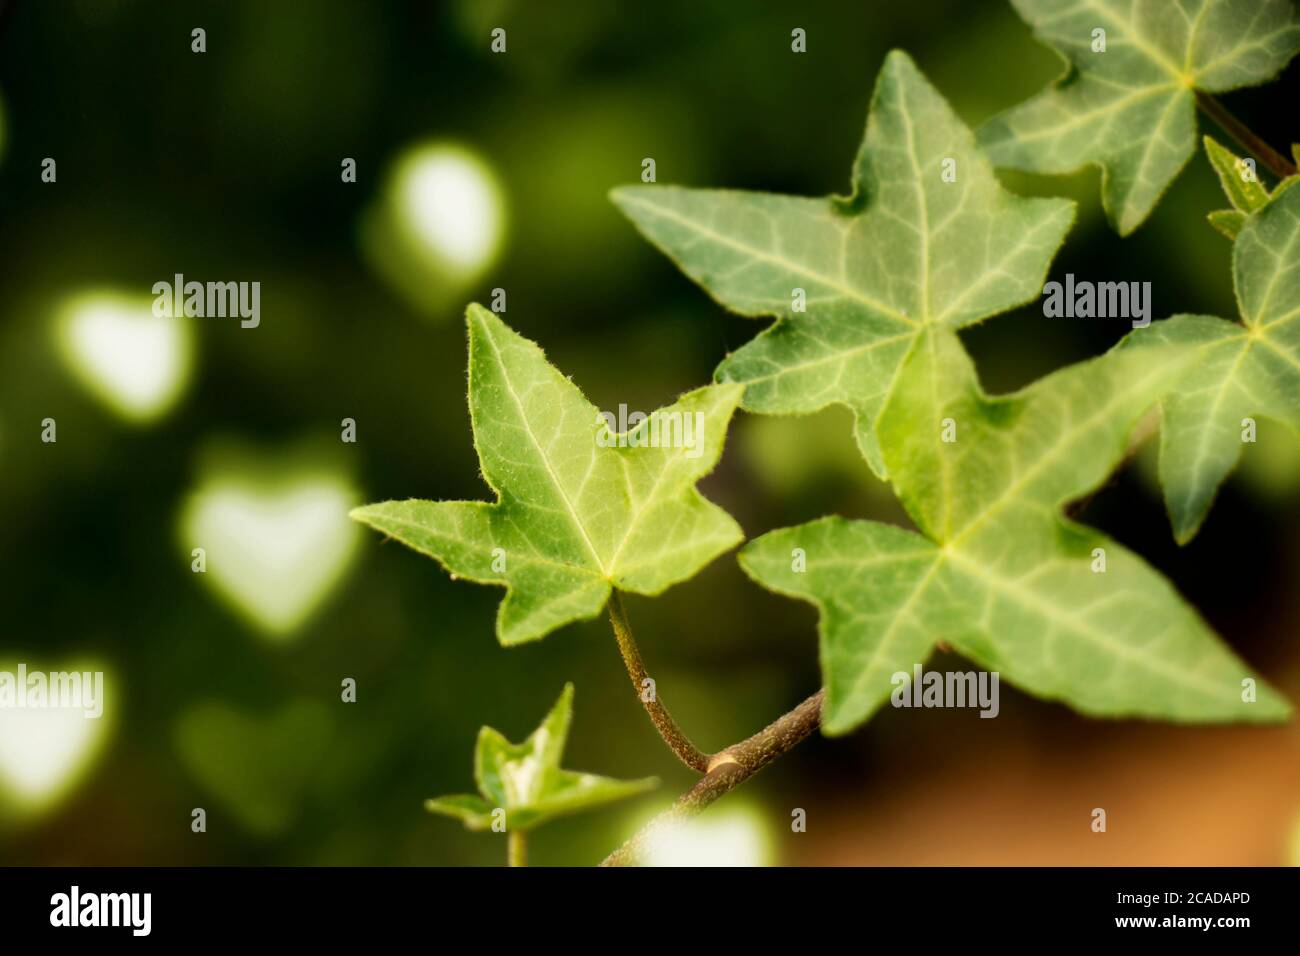 hojas verdes aisladas con el corazón bokeh en el fondo, verano y primavera de fondo para refrescar Foto de stock